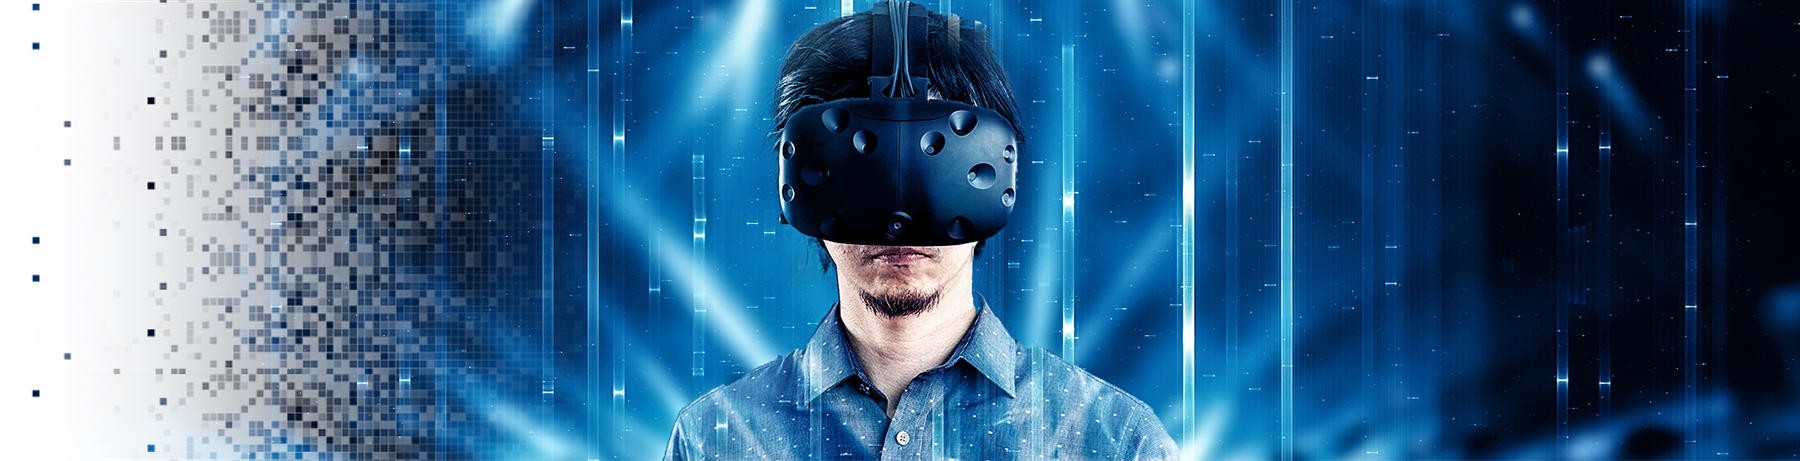 世の中にないVRサービスを具現化せよ「自由視点VR」が可能にするもの